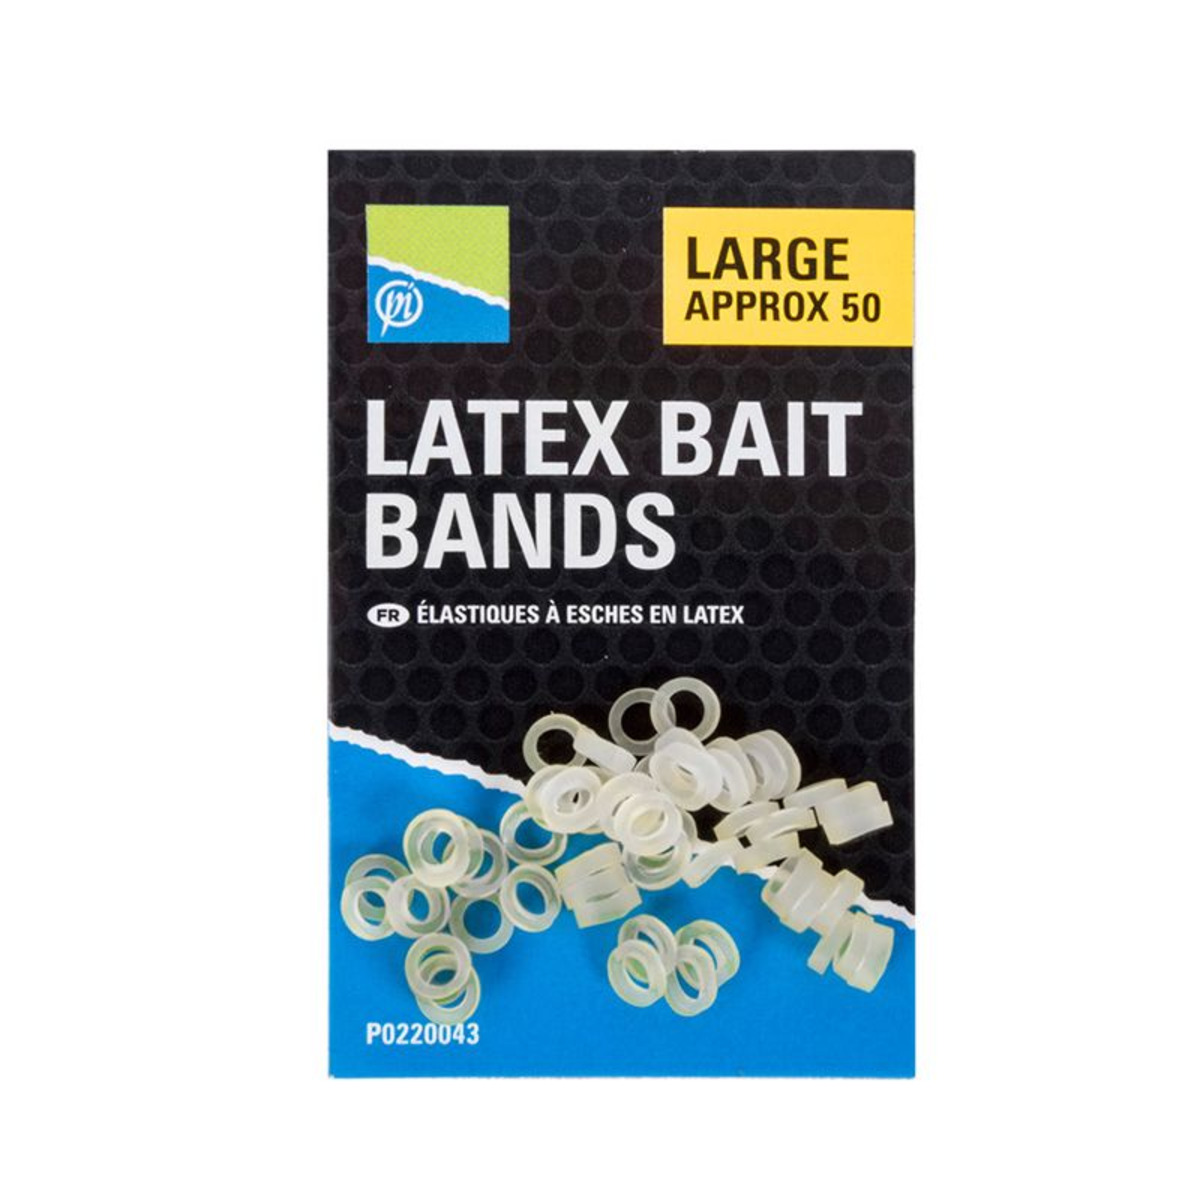 Preston Bloqueo Boiles Pellet Latex Bait Bands - Large 